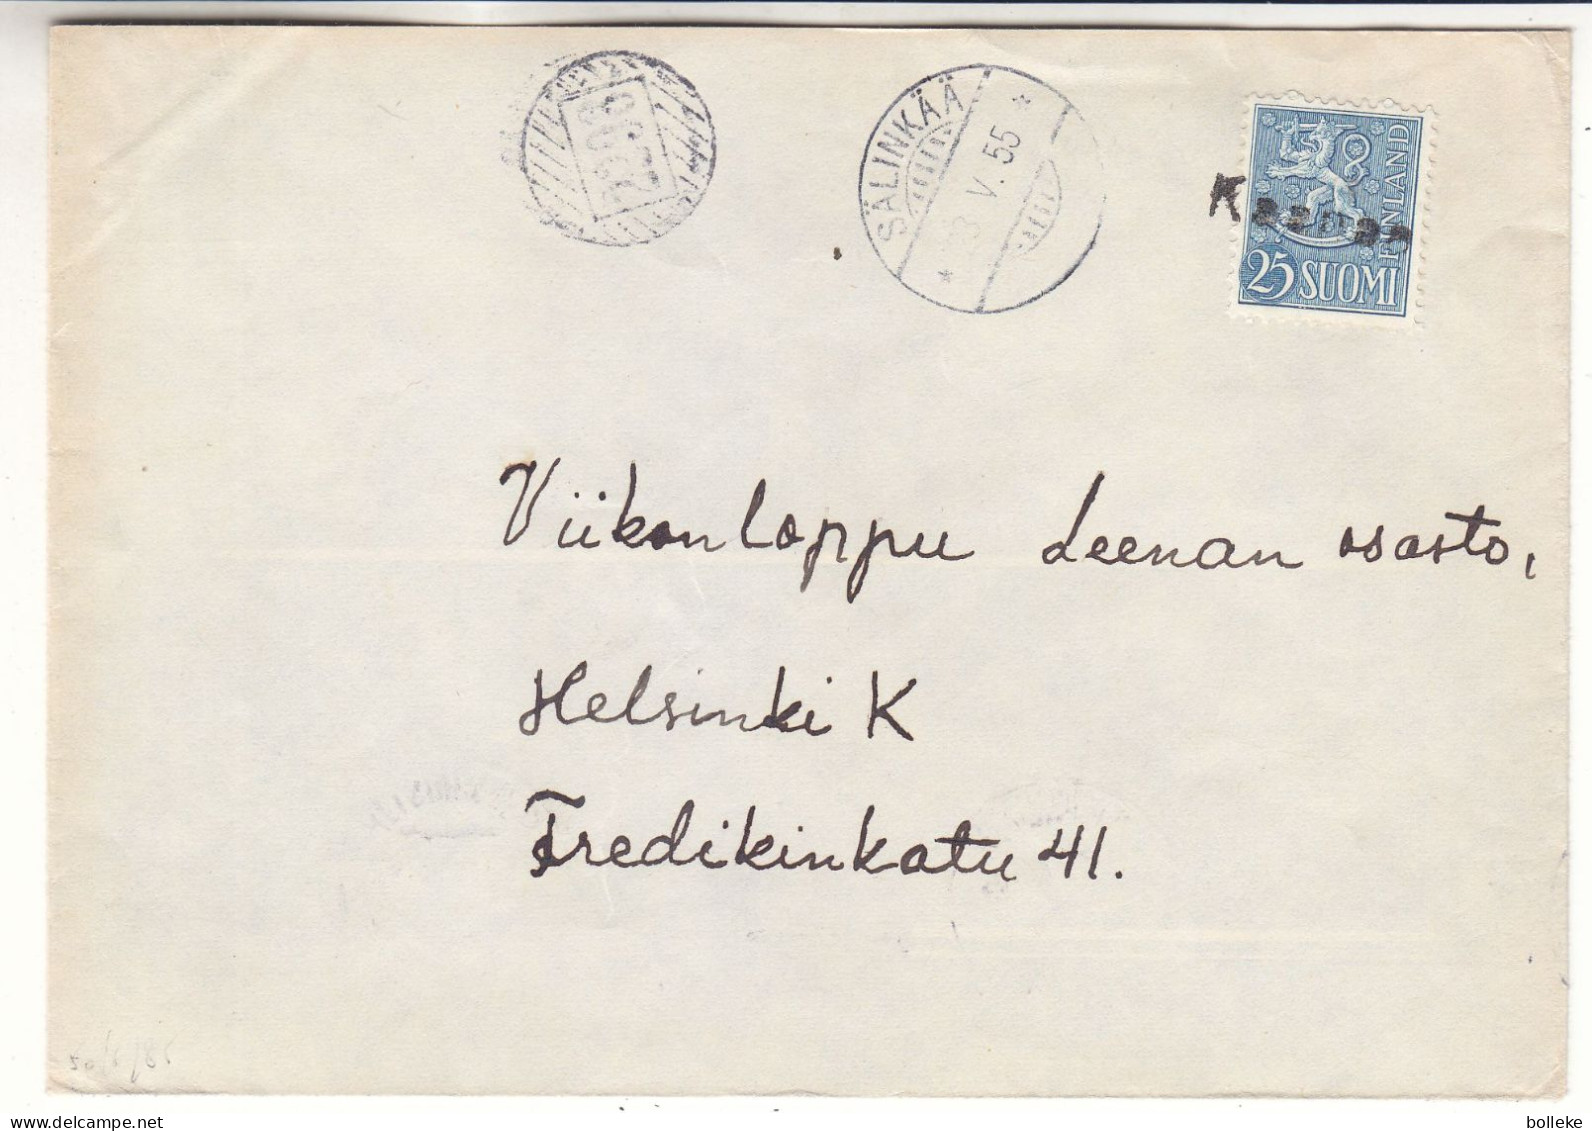 Finlande - Lettre De 1955 - Oblit Avec Griffe Kaanae  ? - Cachet De Sälinkää Et Mäntsälä - Avec Cachet Rural 2298  ? - Lettres & Documents